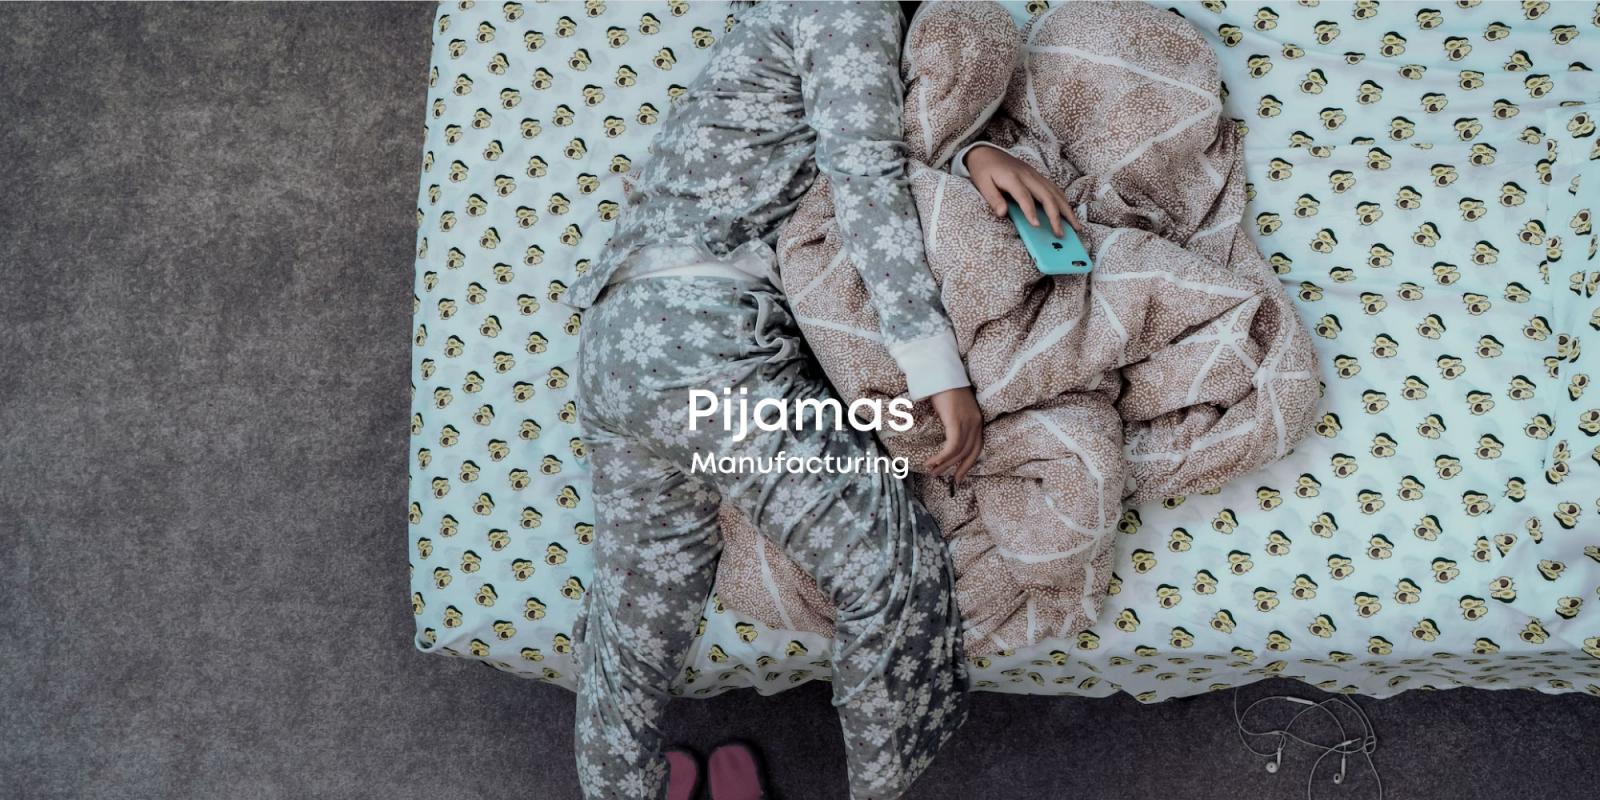 Pijamas Manufacturing